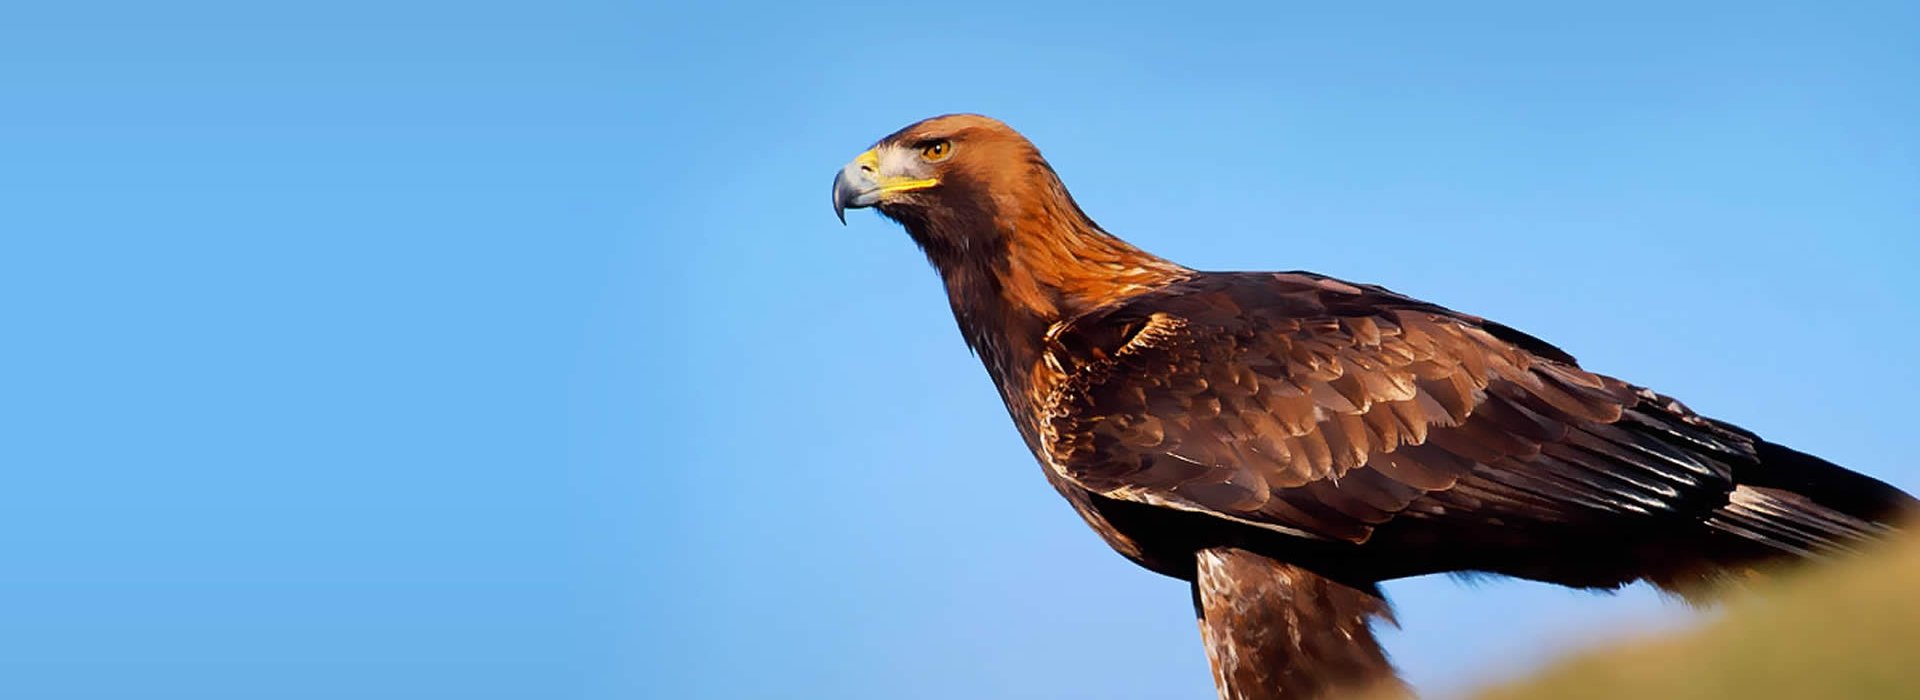 A perched Golden Eagle